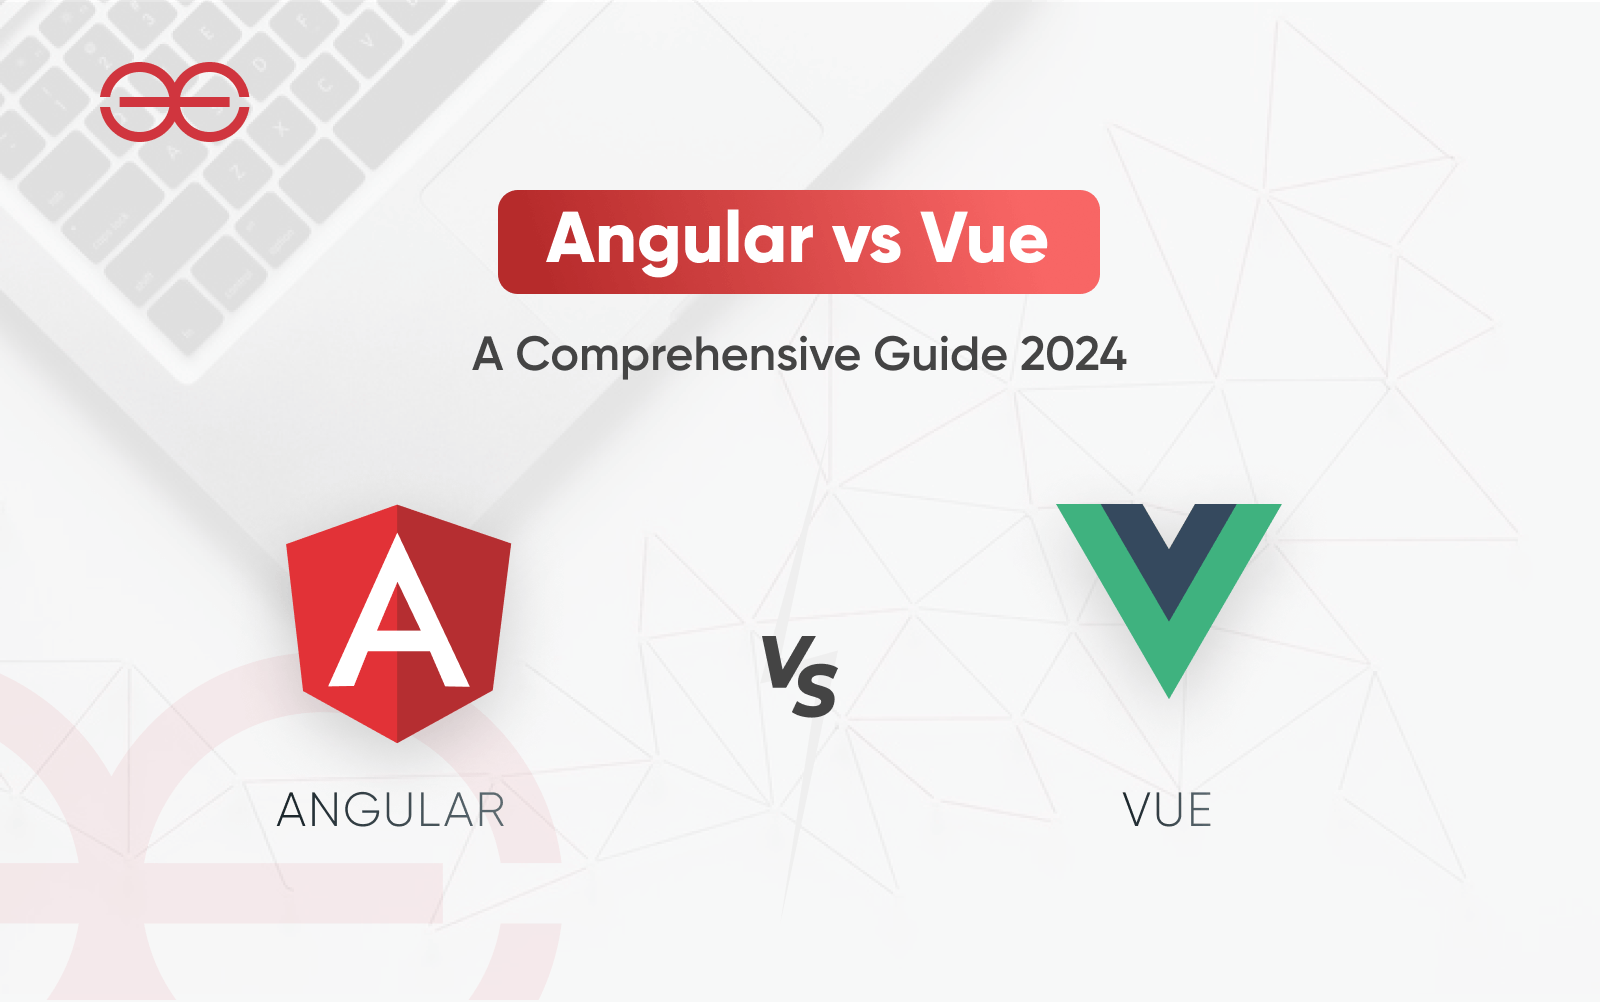 Angular vs vue a comprehensive guide